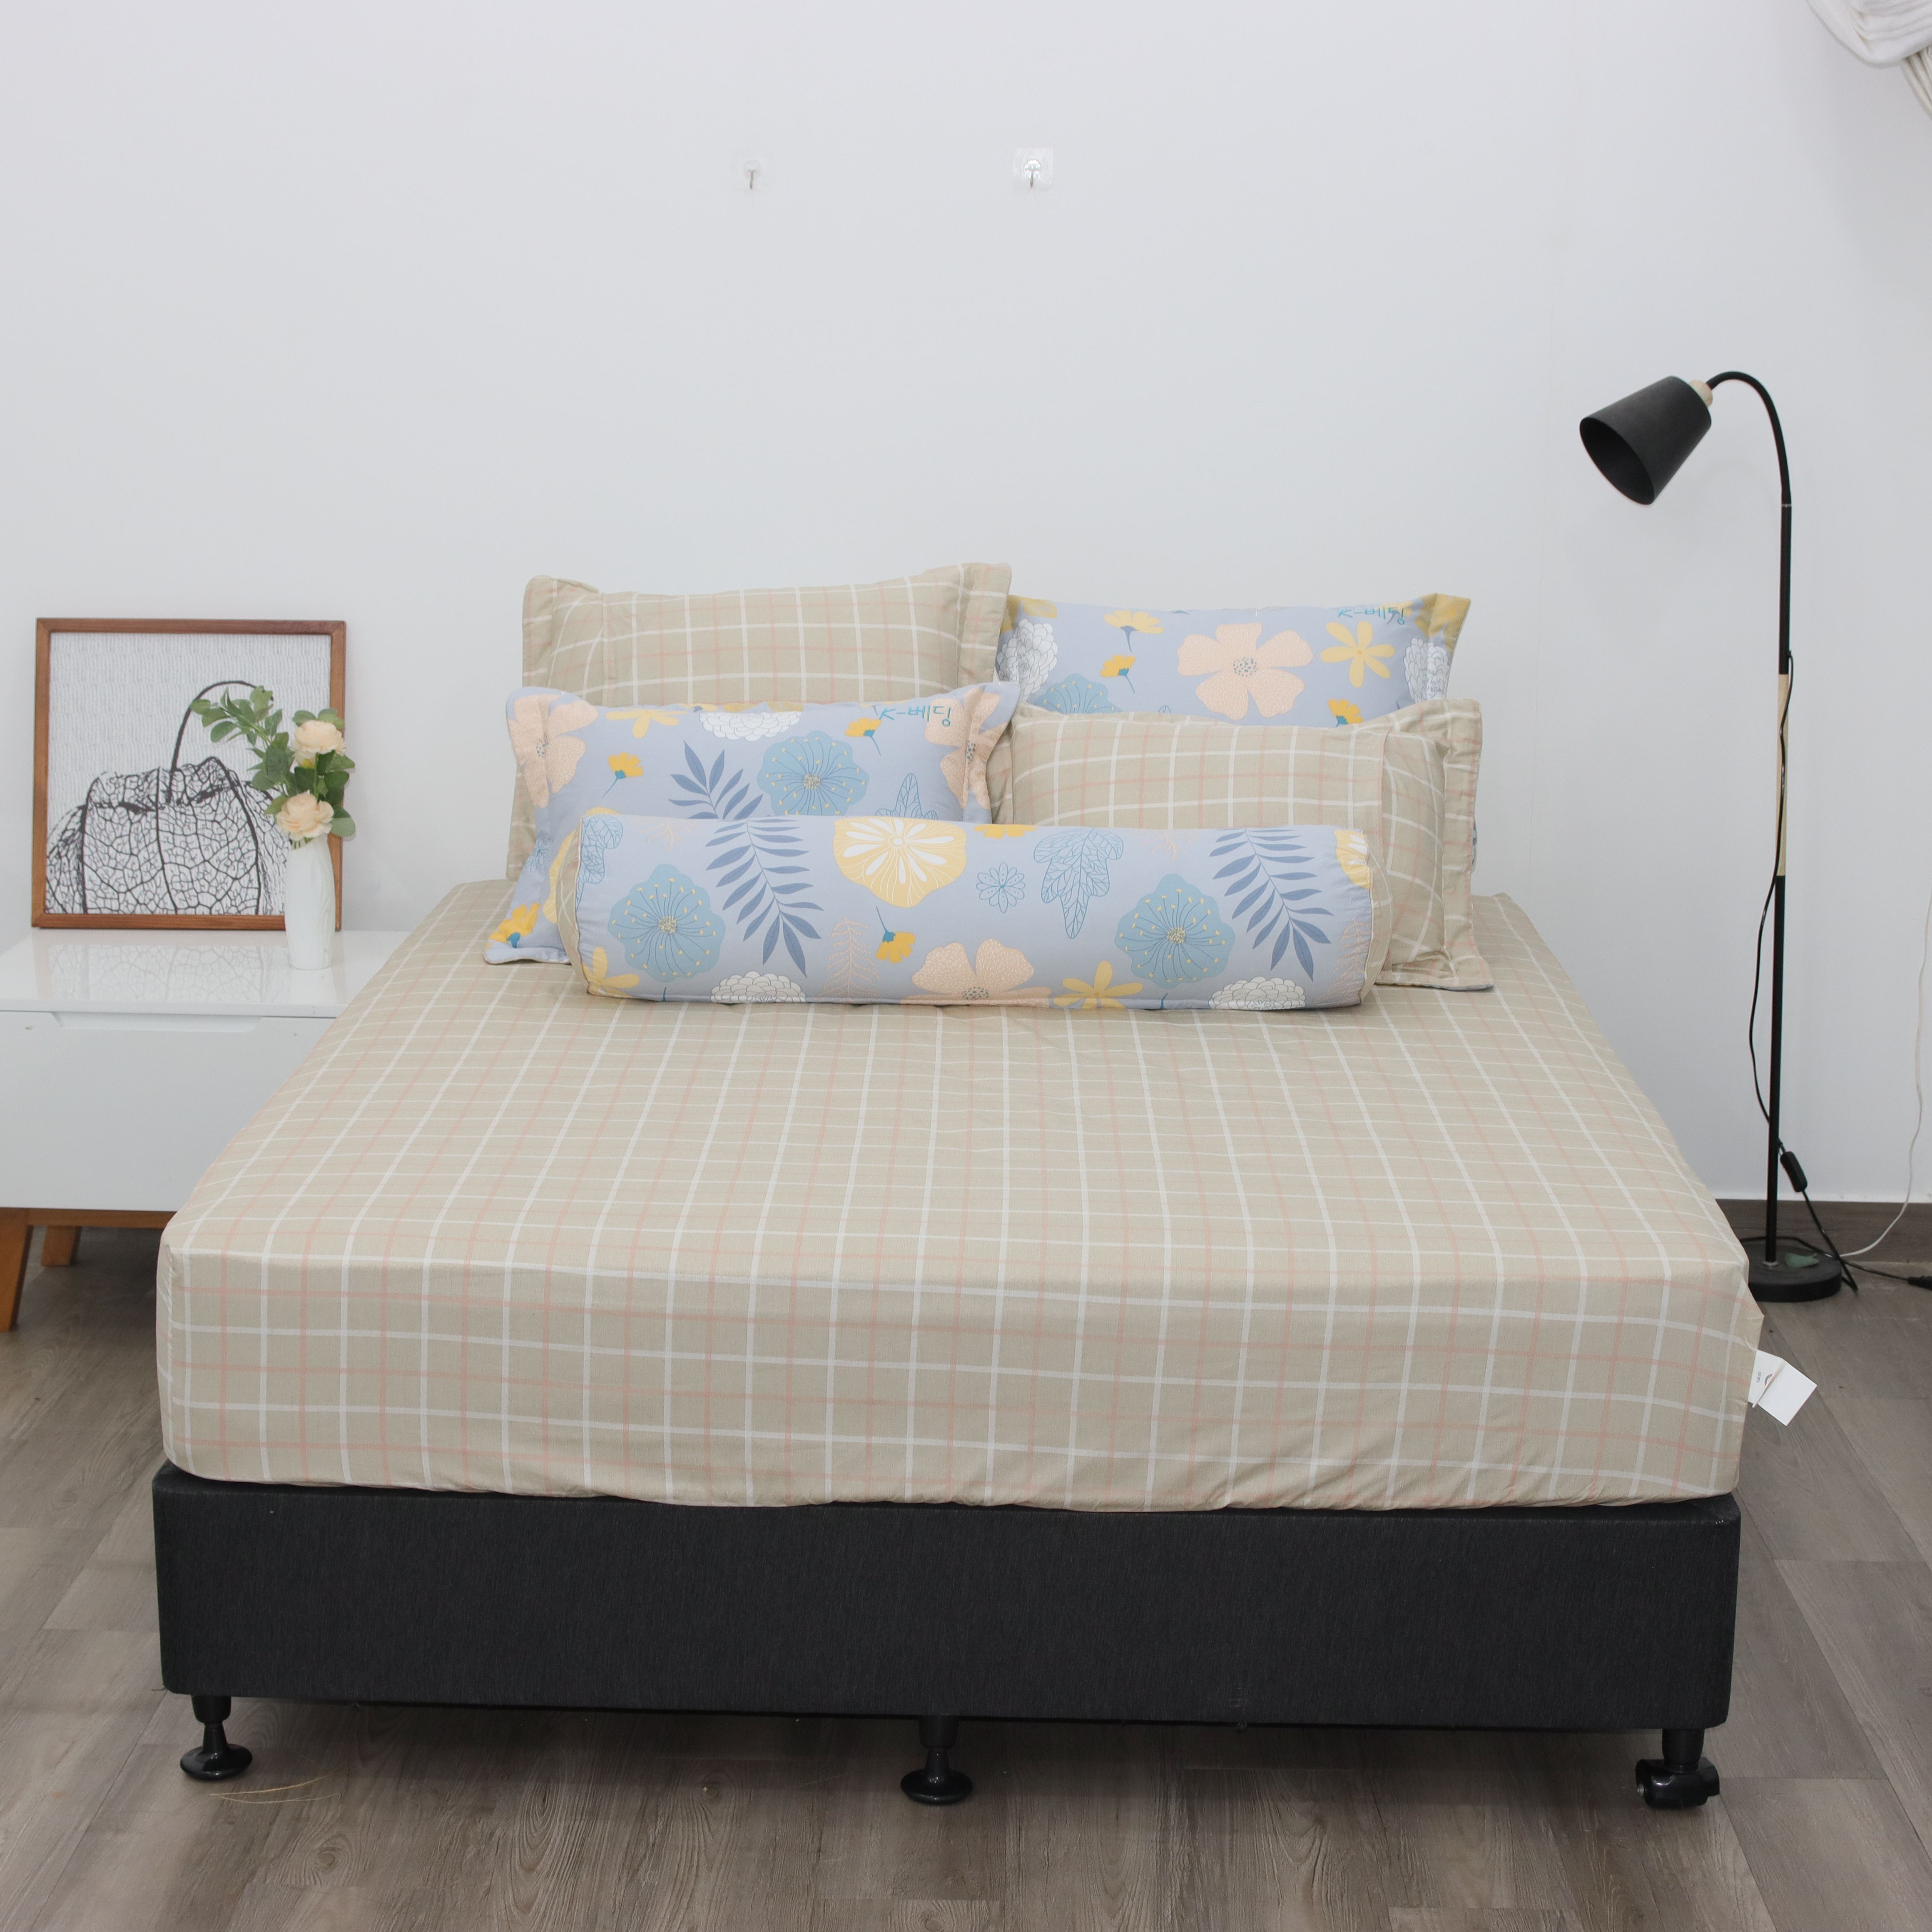 Bộ ga giường K-Bedding KCP chất liệu Cotton (KHÔNG BAO GỒM CHĂN)